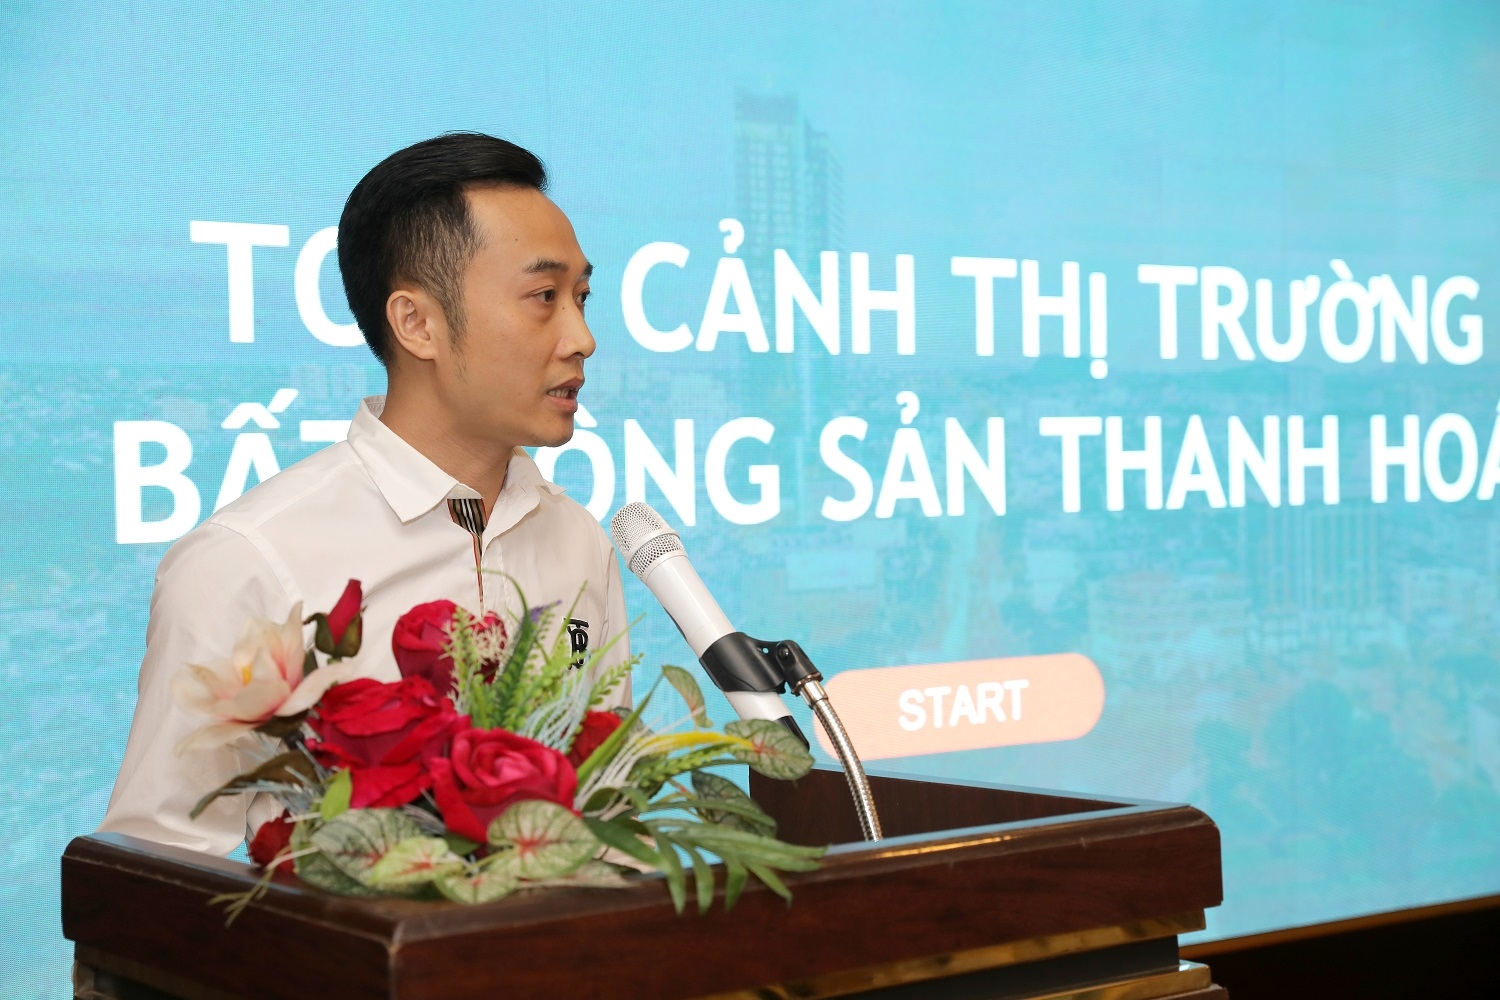 Ông Nguyễn Văn Biên, Tổng giám đốc CoreLand cho biết, Thanh Hóa đang đứng trước cơ hội phát triển trở thành cực tăng trưởng mới.